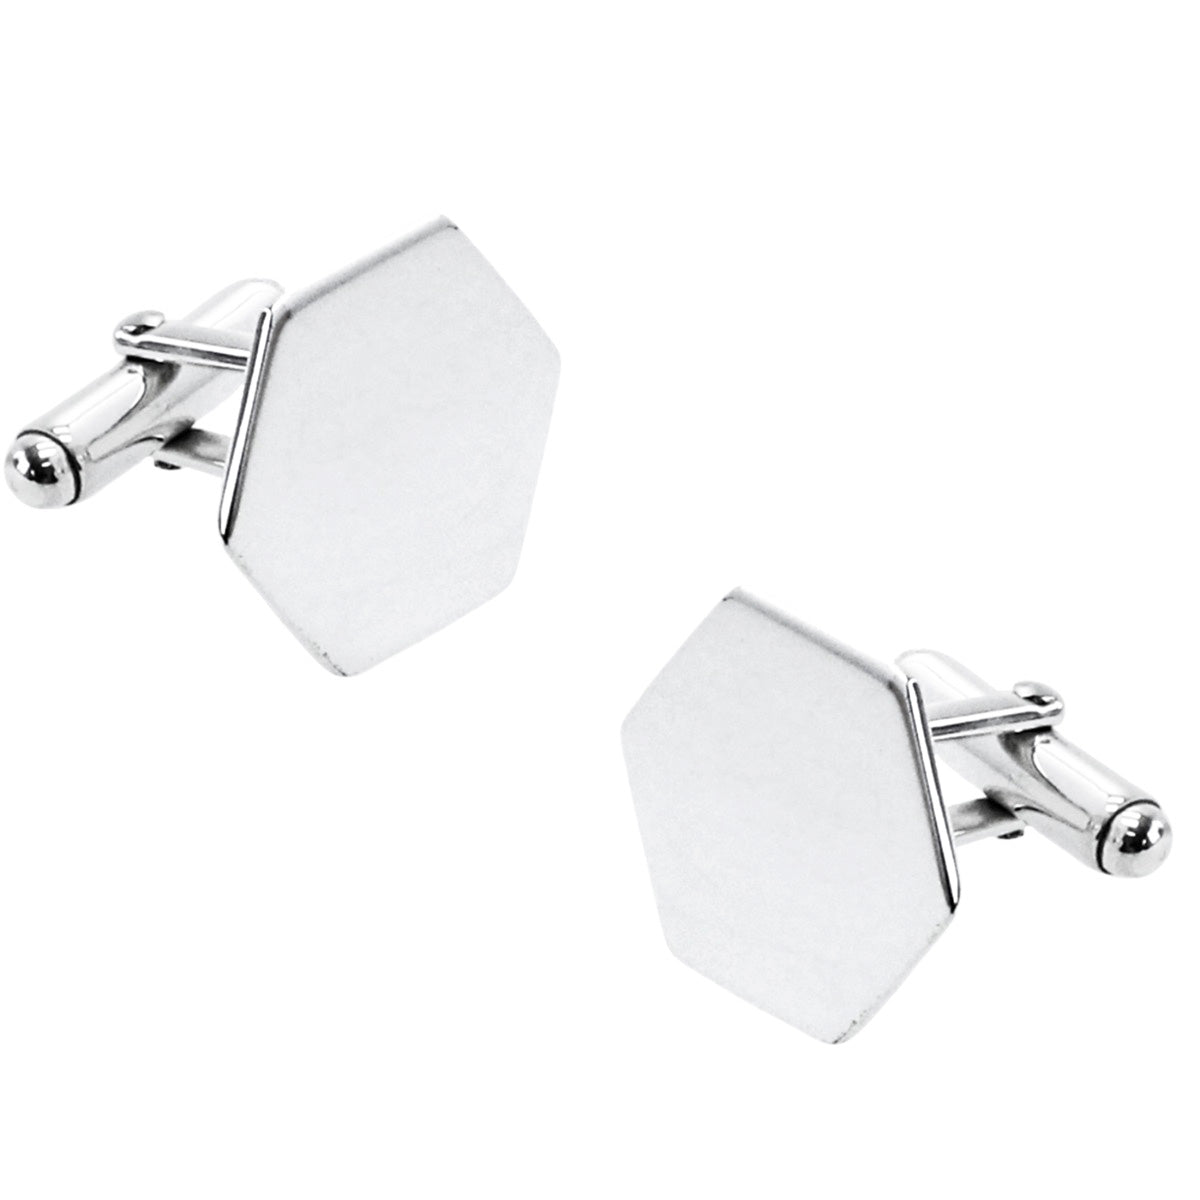 Silver hexagonal cufflinks